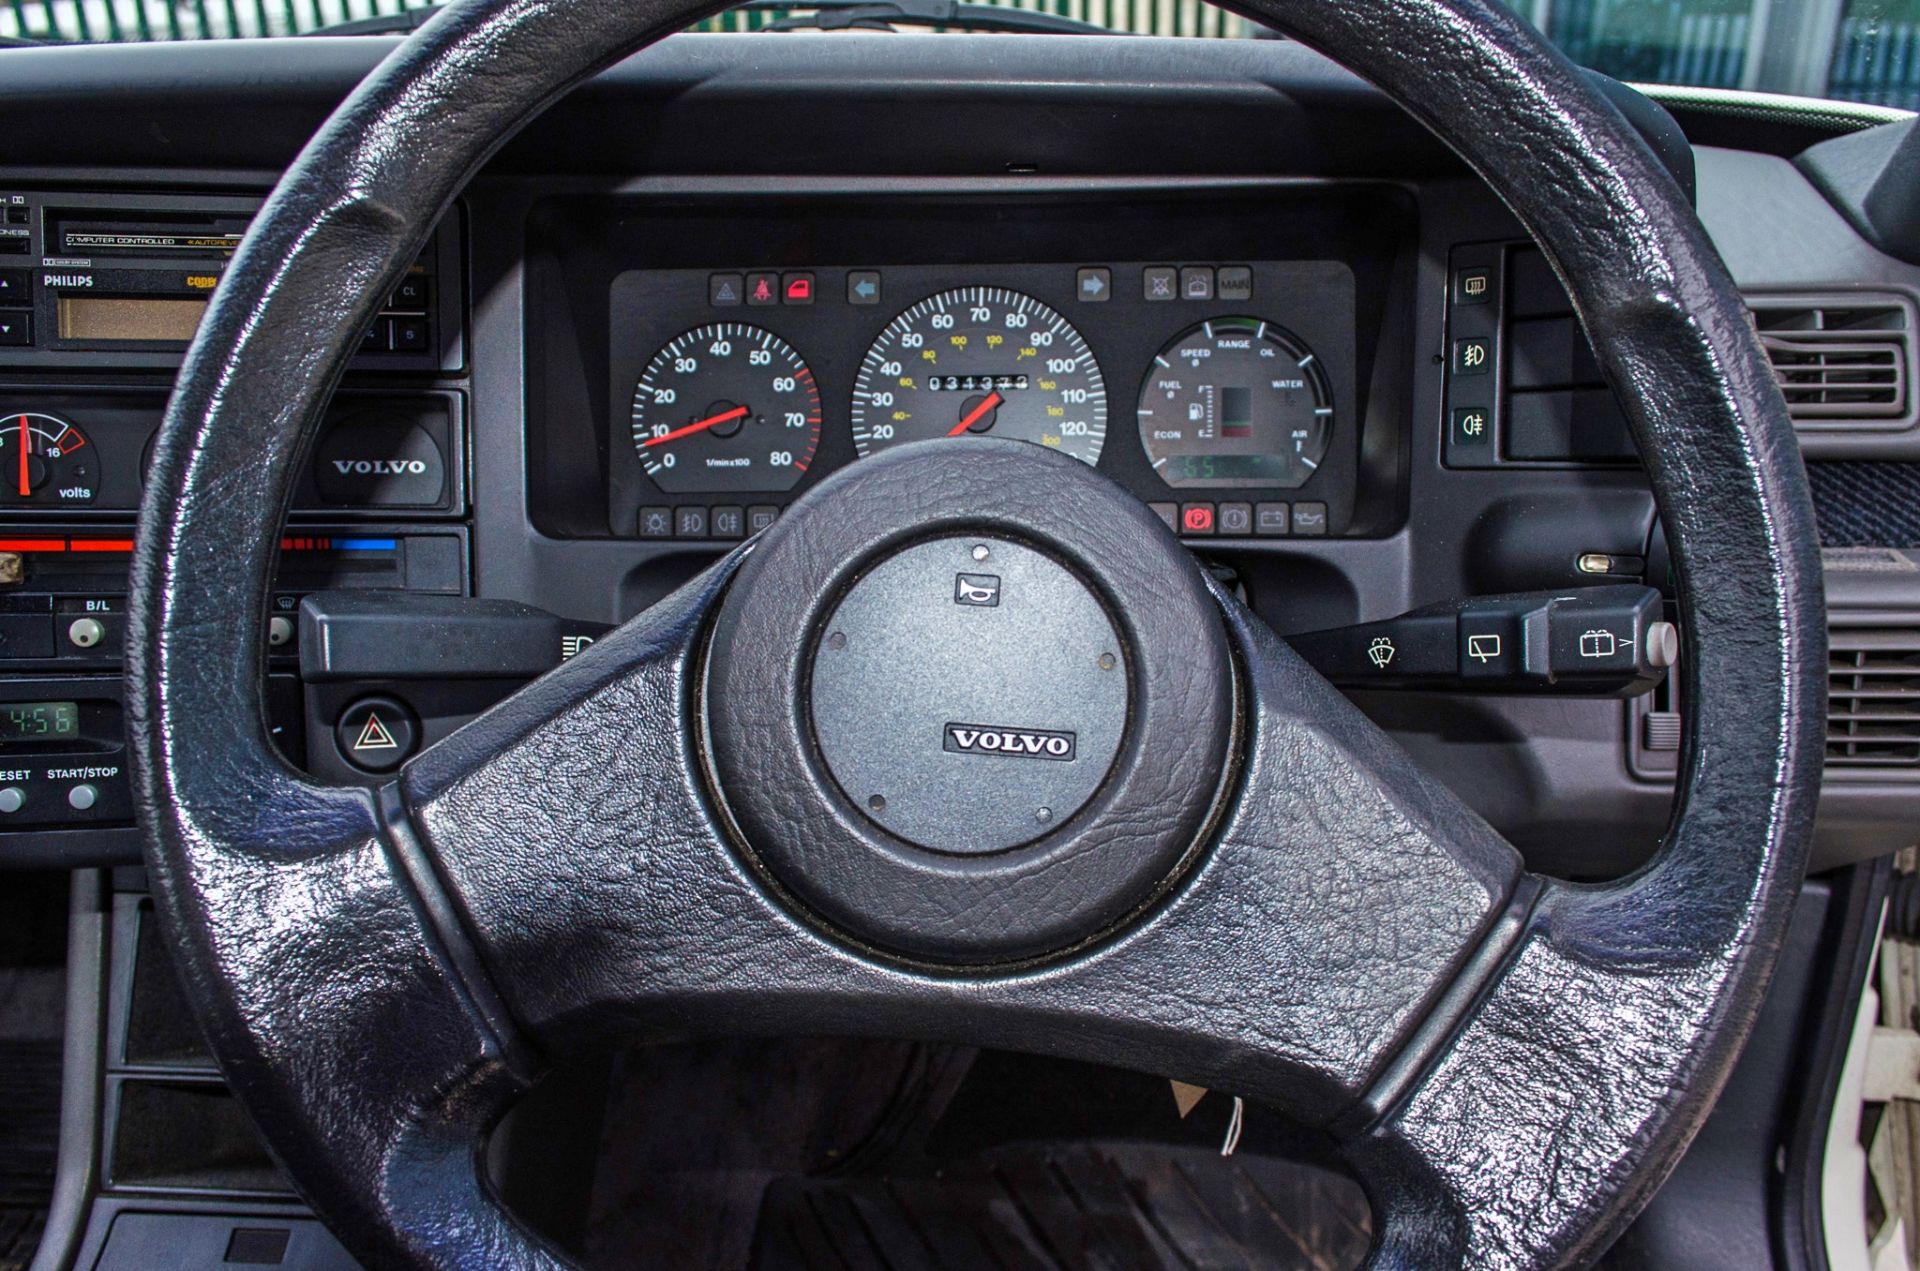 1987 Volvo 480 ES 1721CC 3 door hatchback - Image 47 of 56